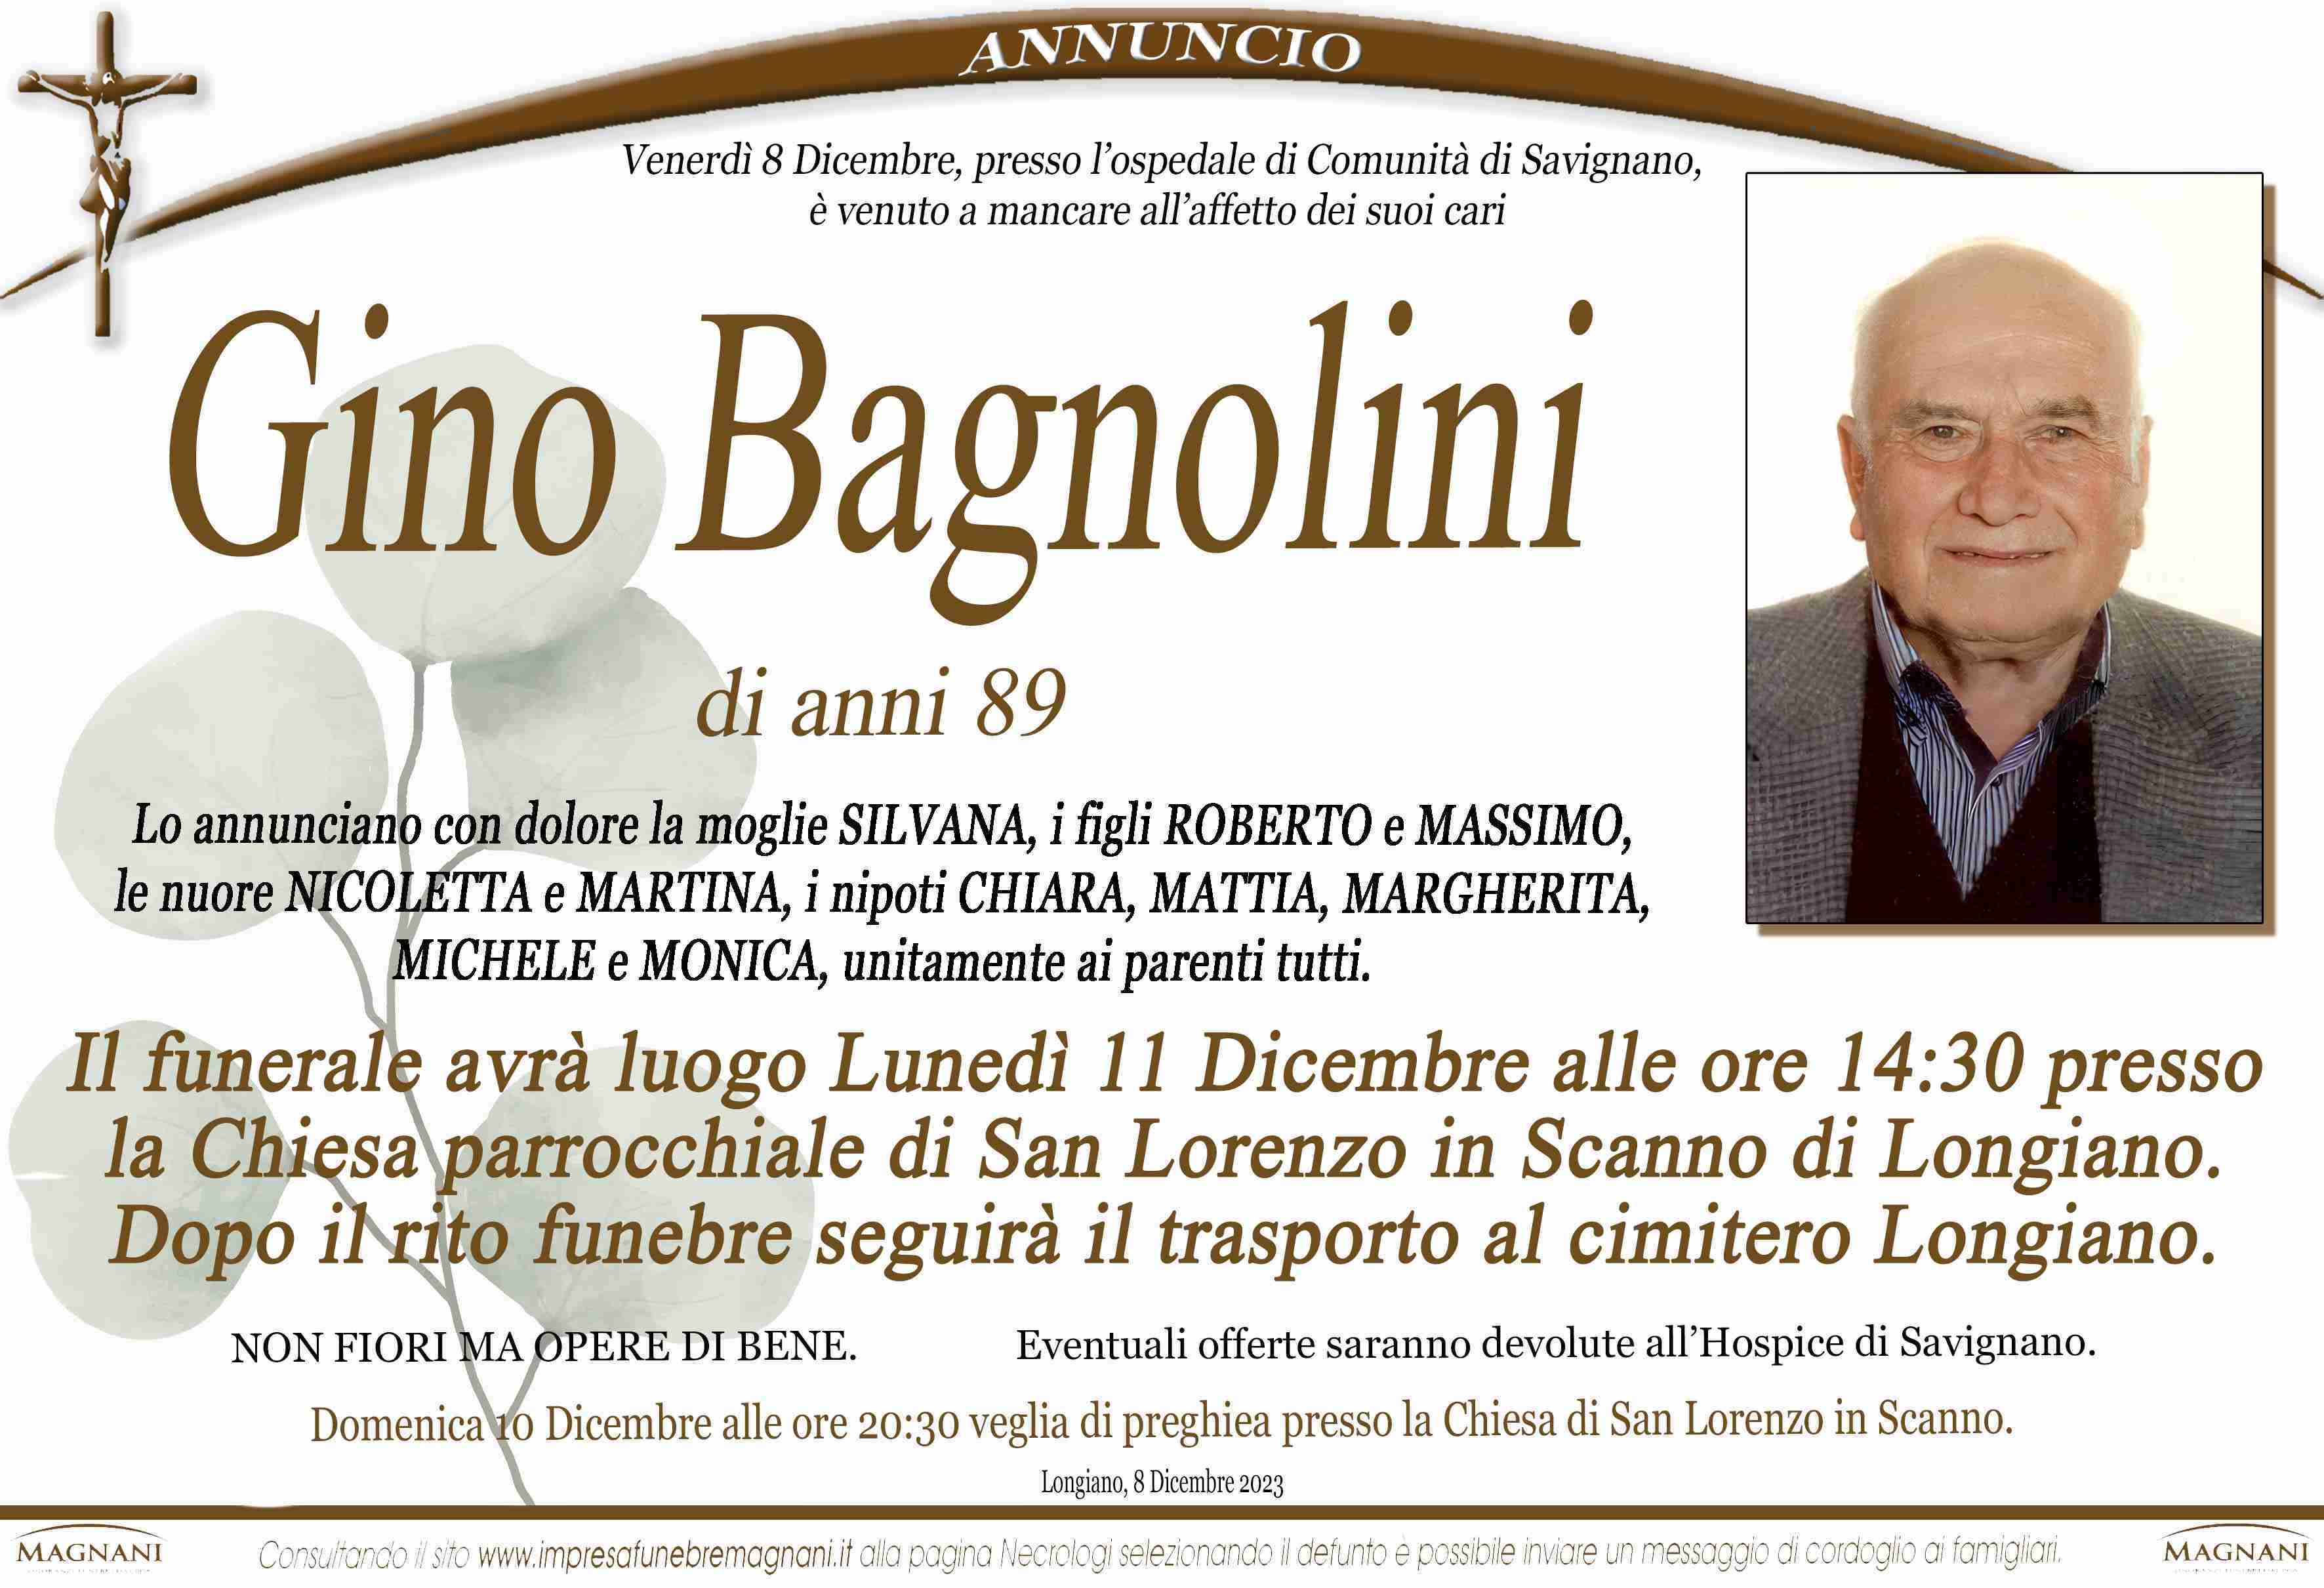 Gino Bagnolini